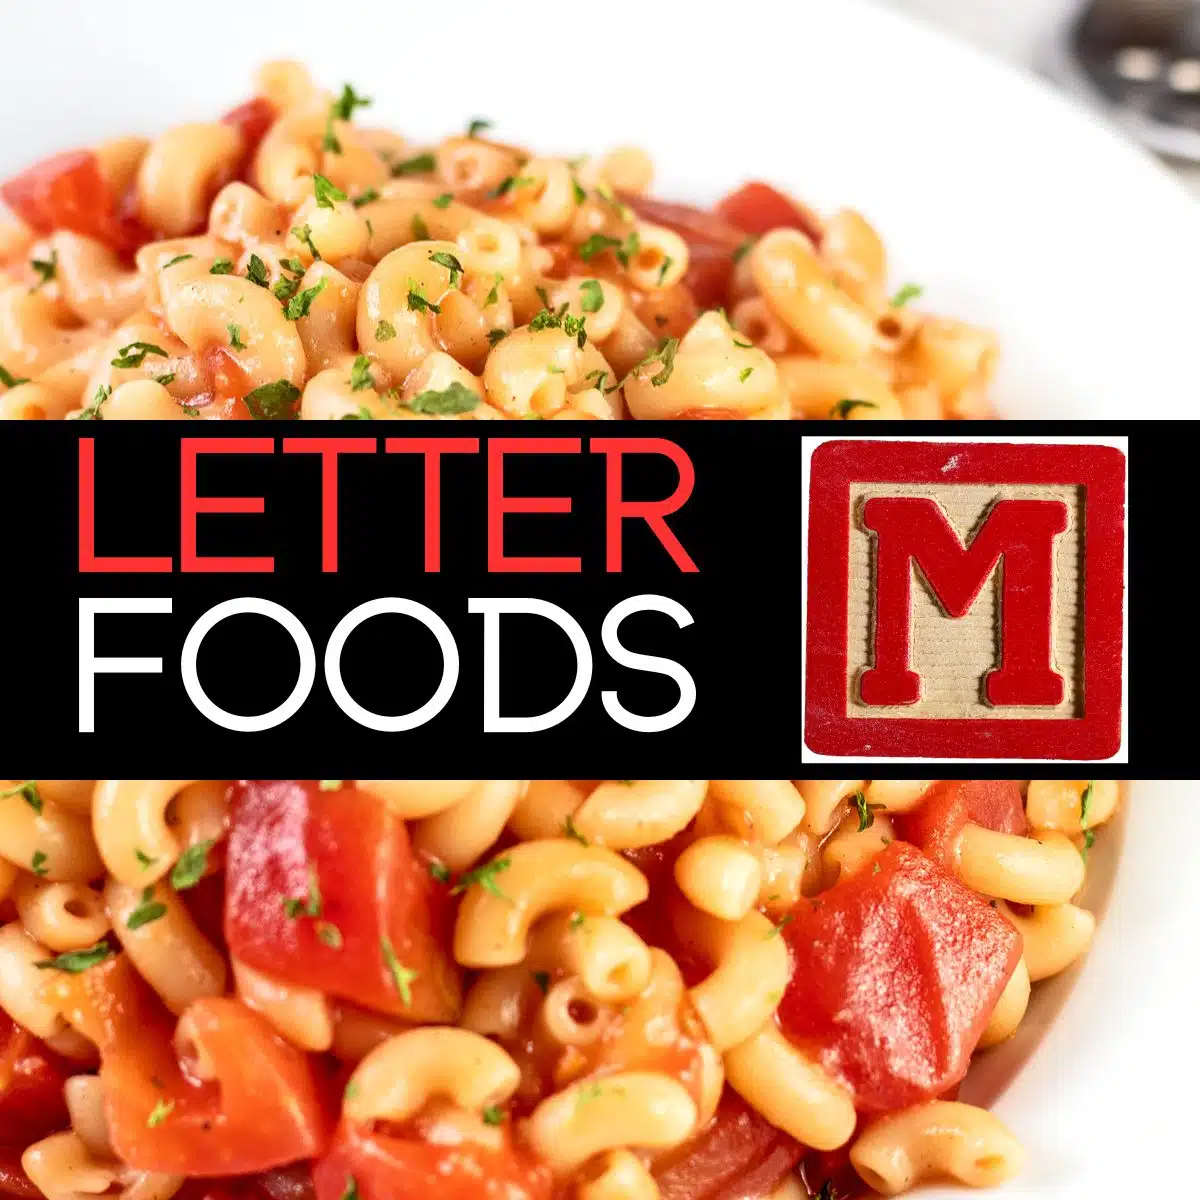 Immagine quadrata per gli alimenti che iniziano con la lettera M, che mostra i maccheroni.